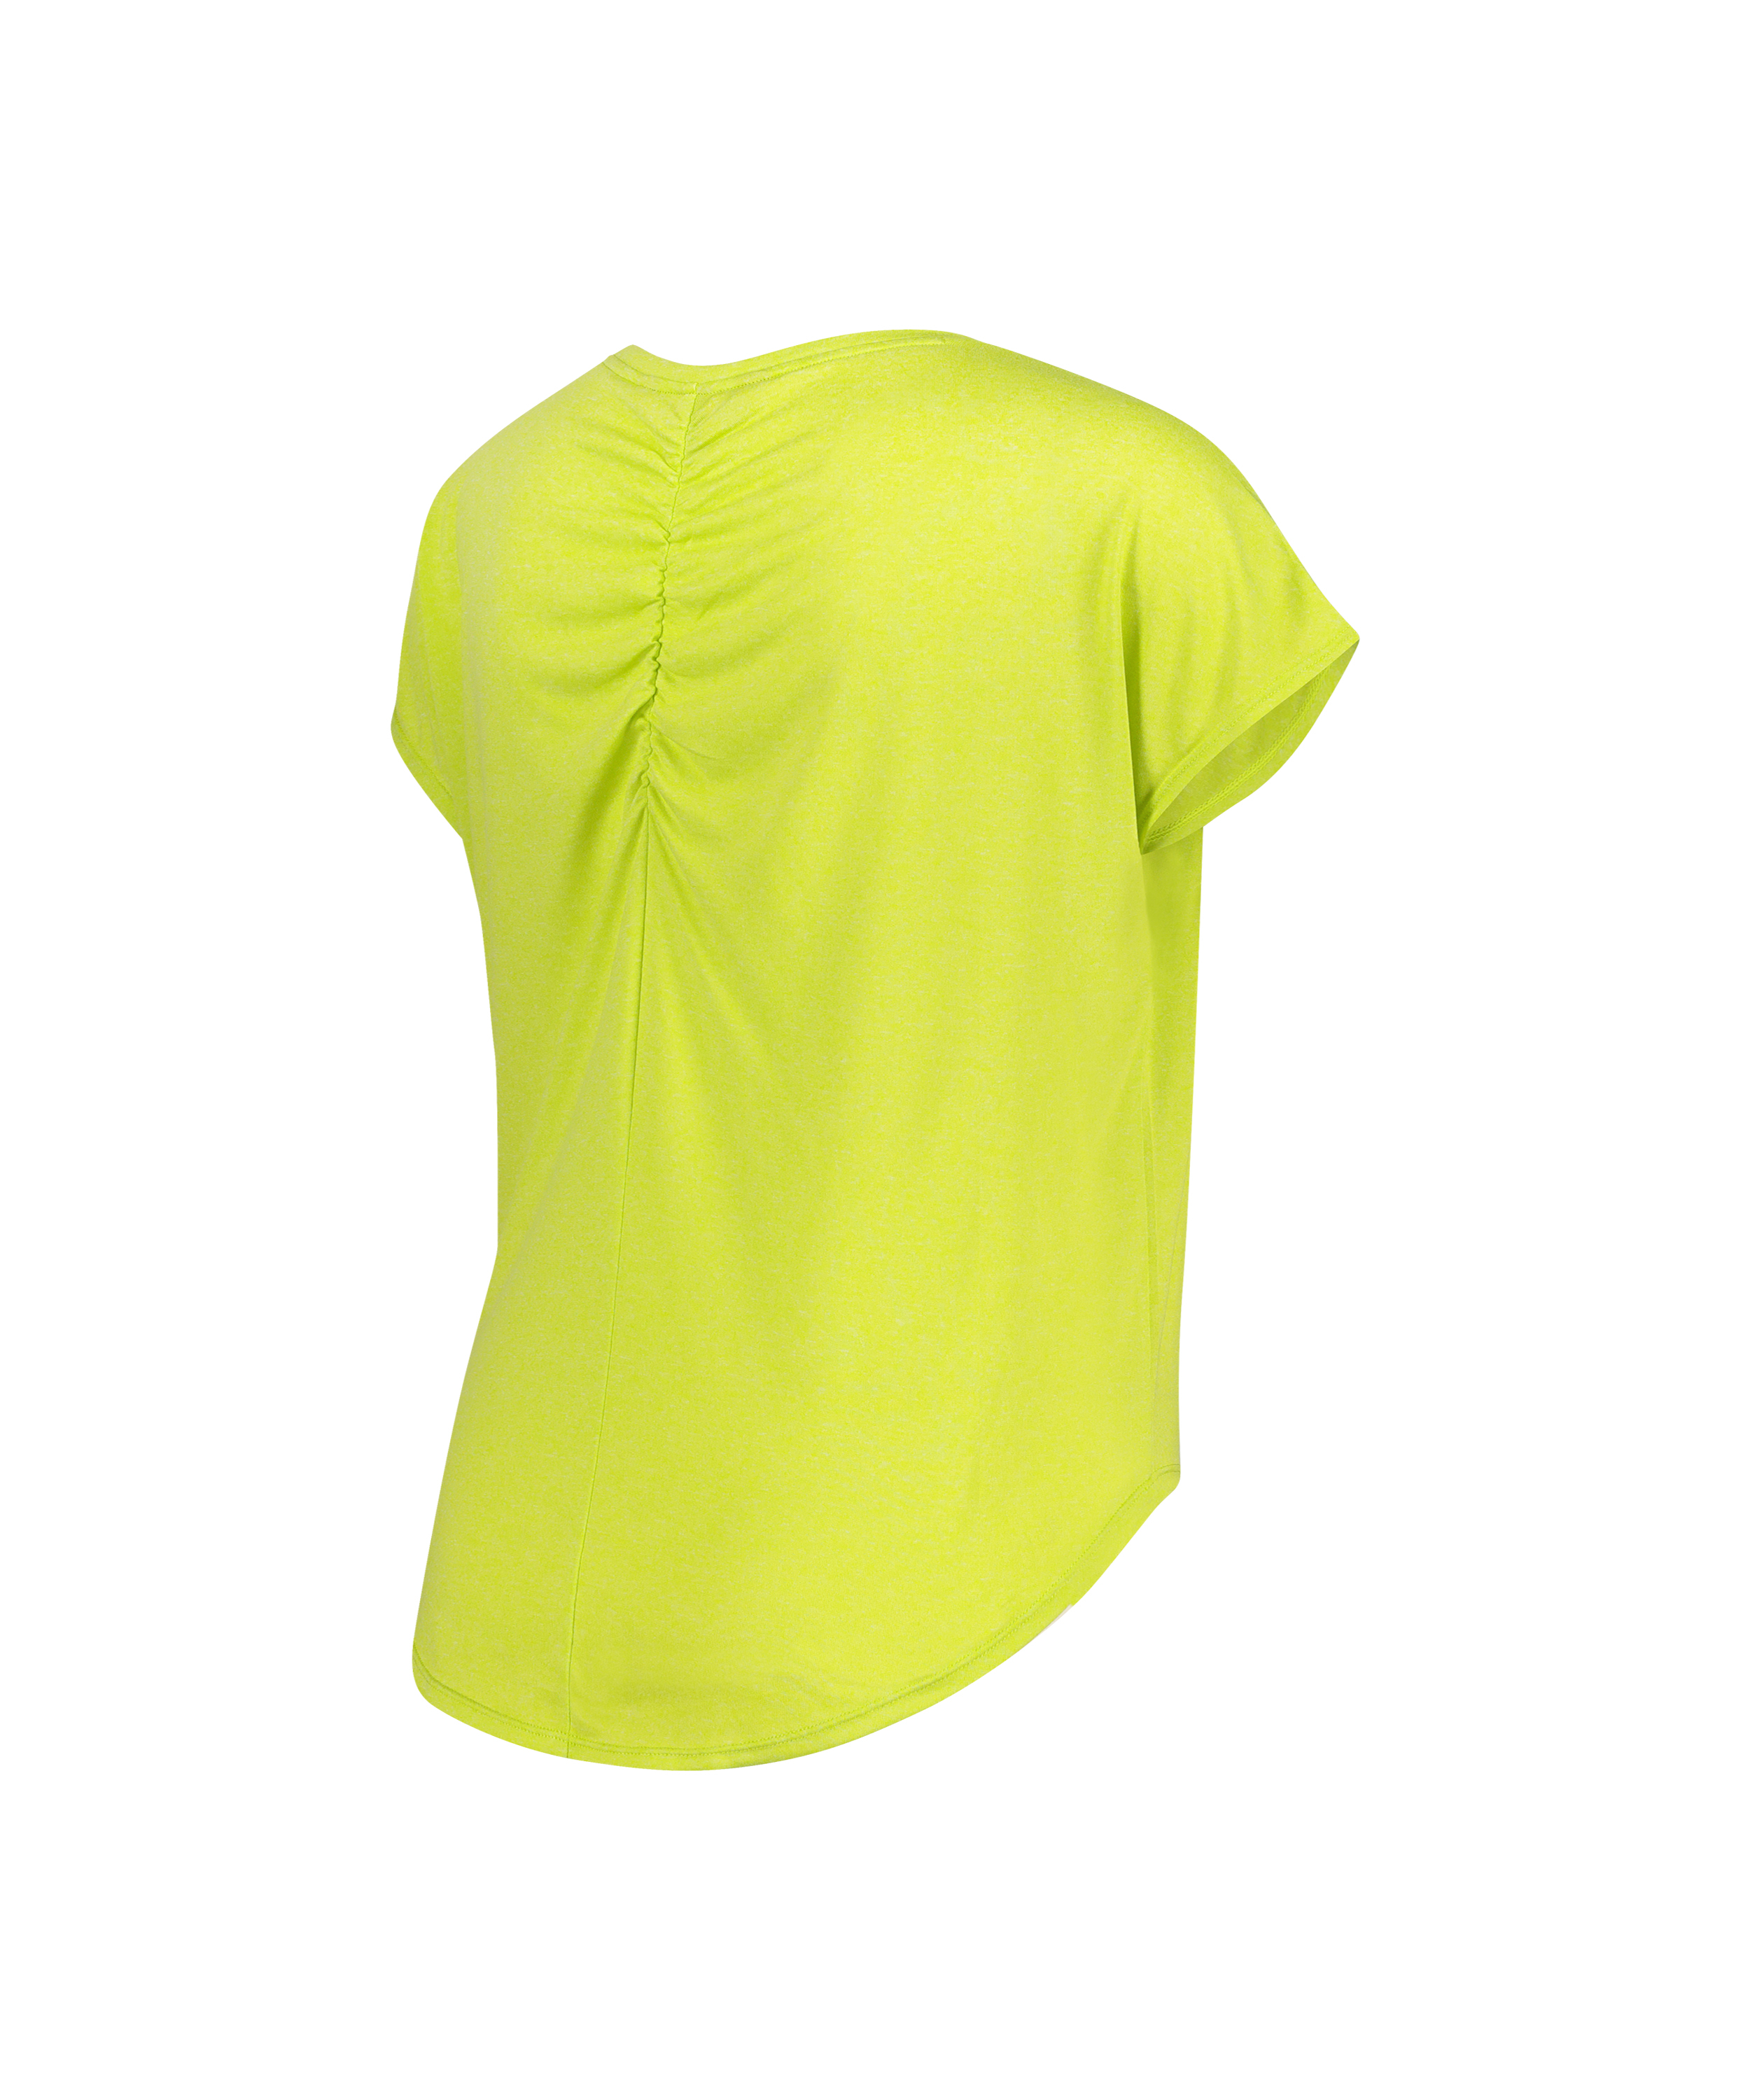 HKMX Sports-t-shirt Asana, grøn, main